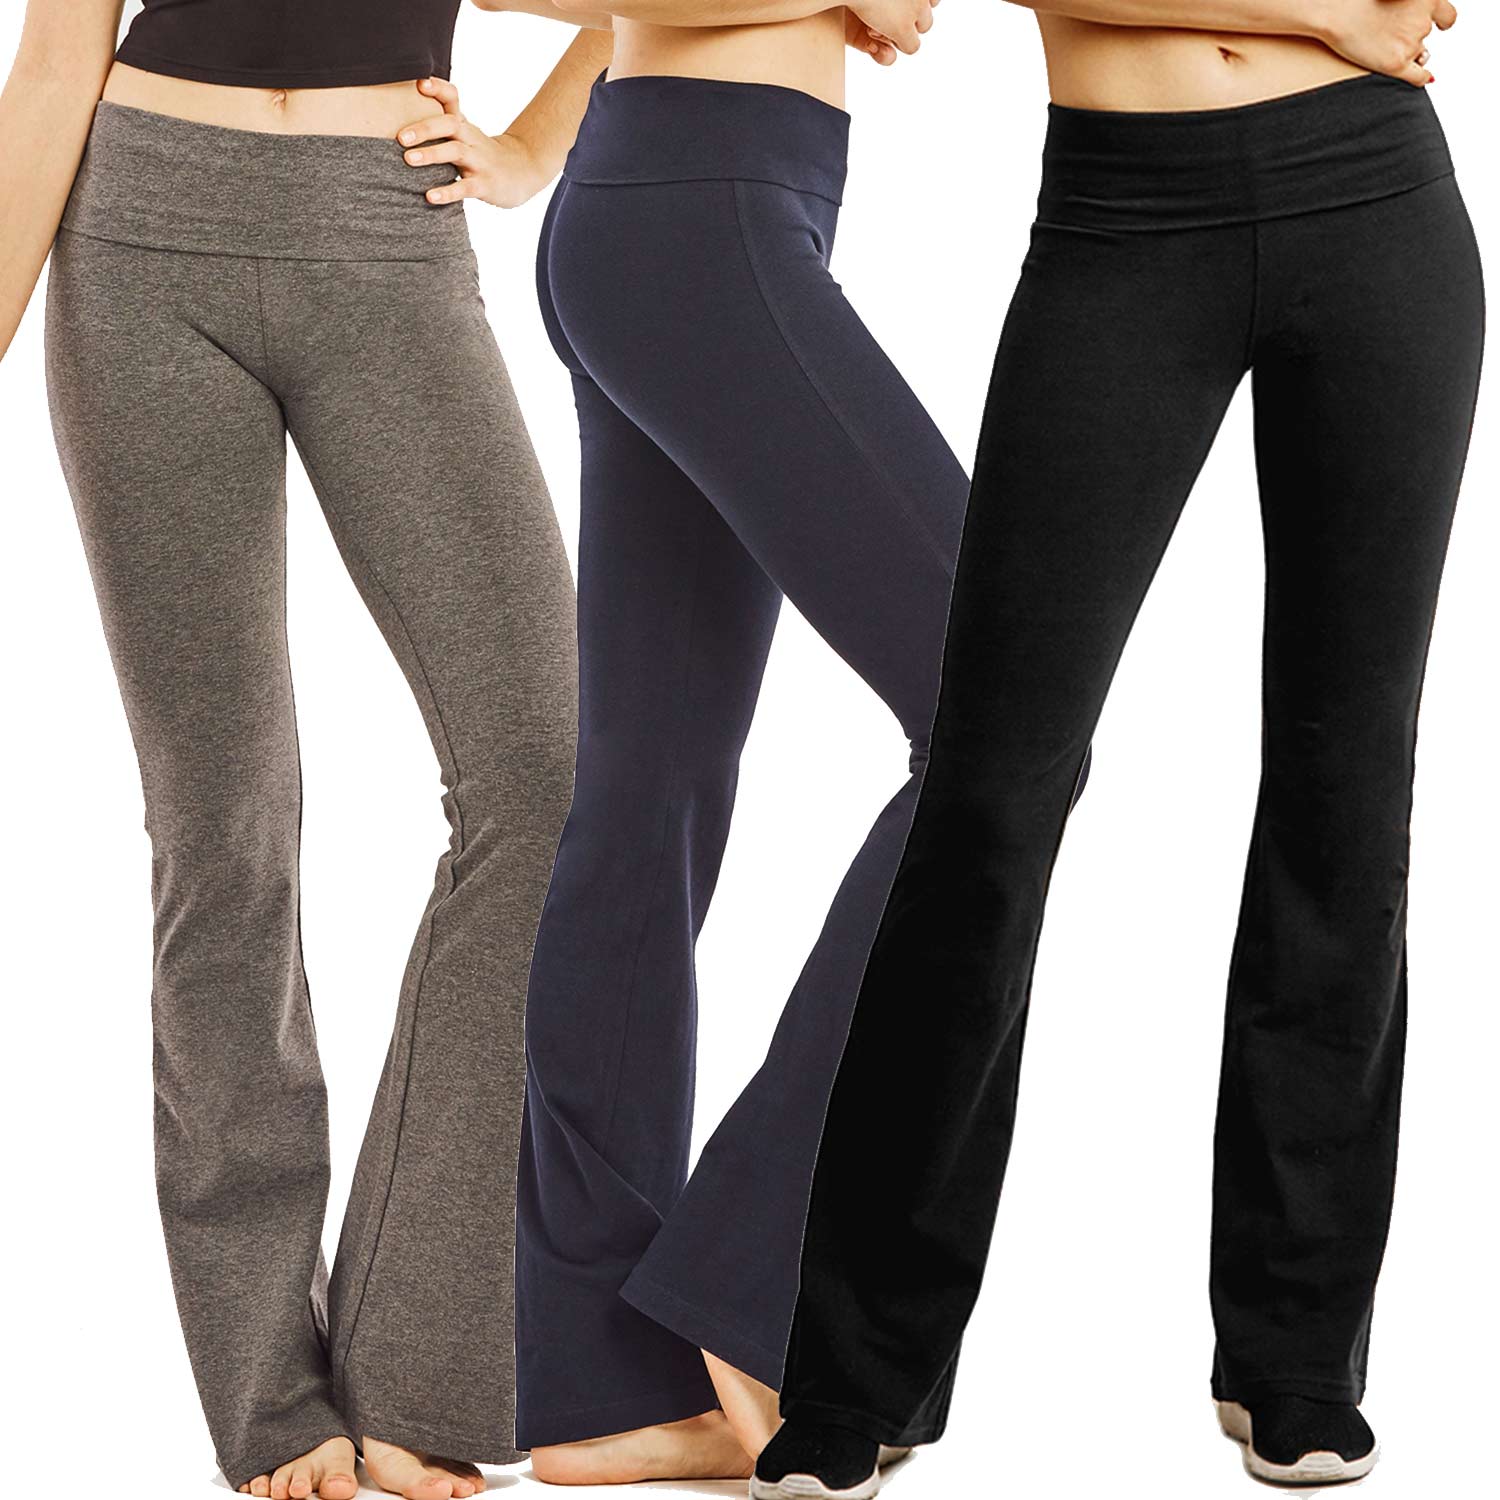 3-Pack Ladies Yoga Pants